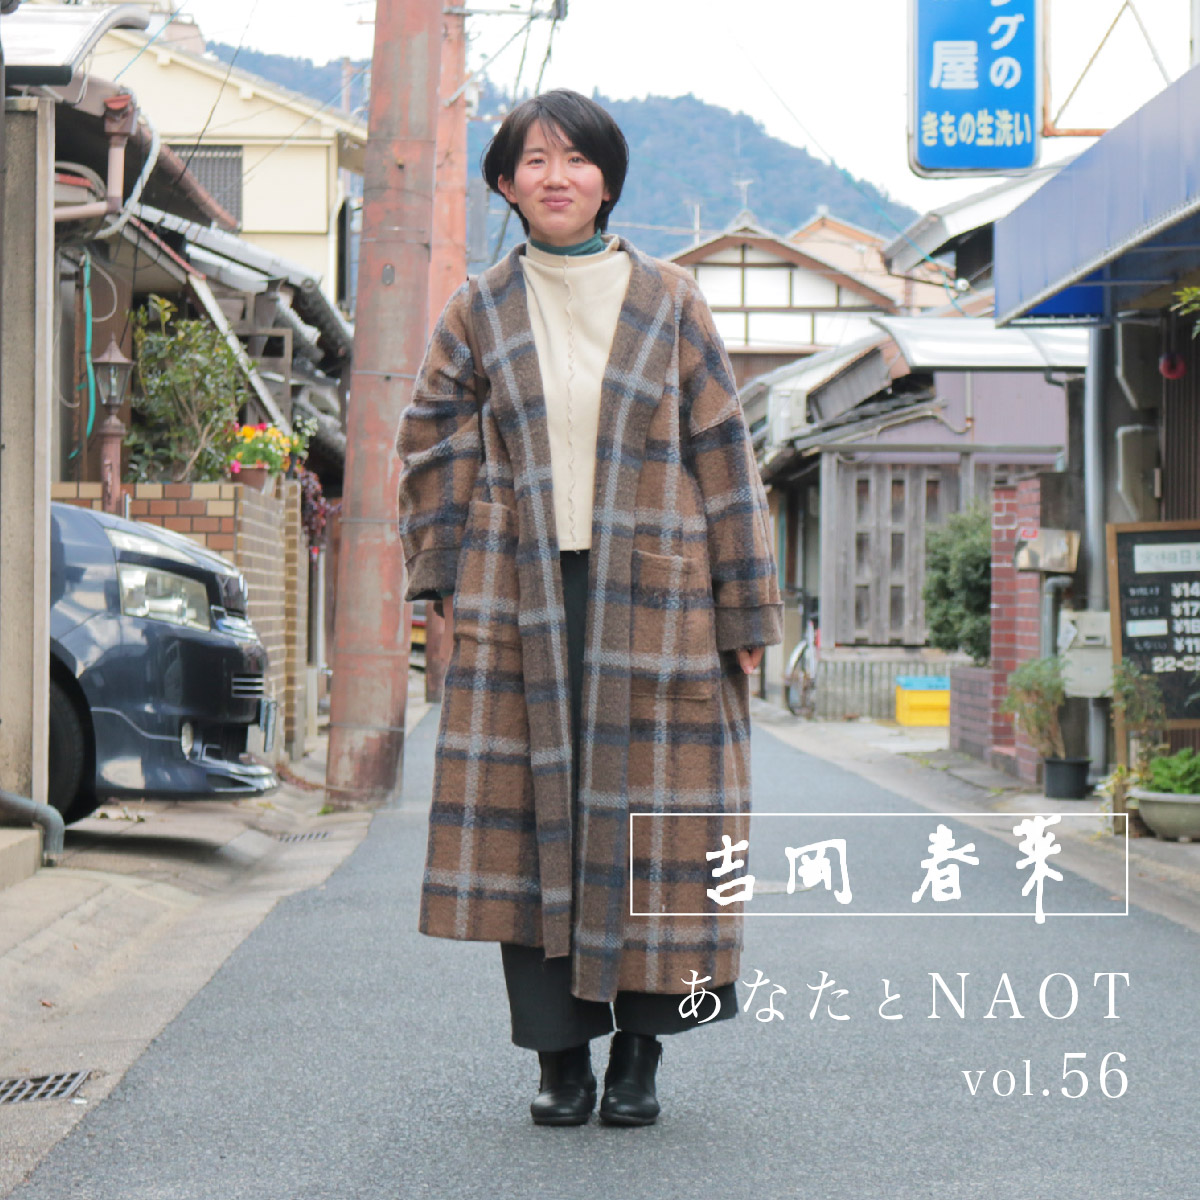 あなたとNAOT vol.56 | NAOT ナオトジャパンオフィシャルサイト